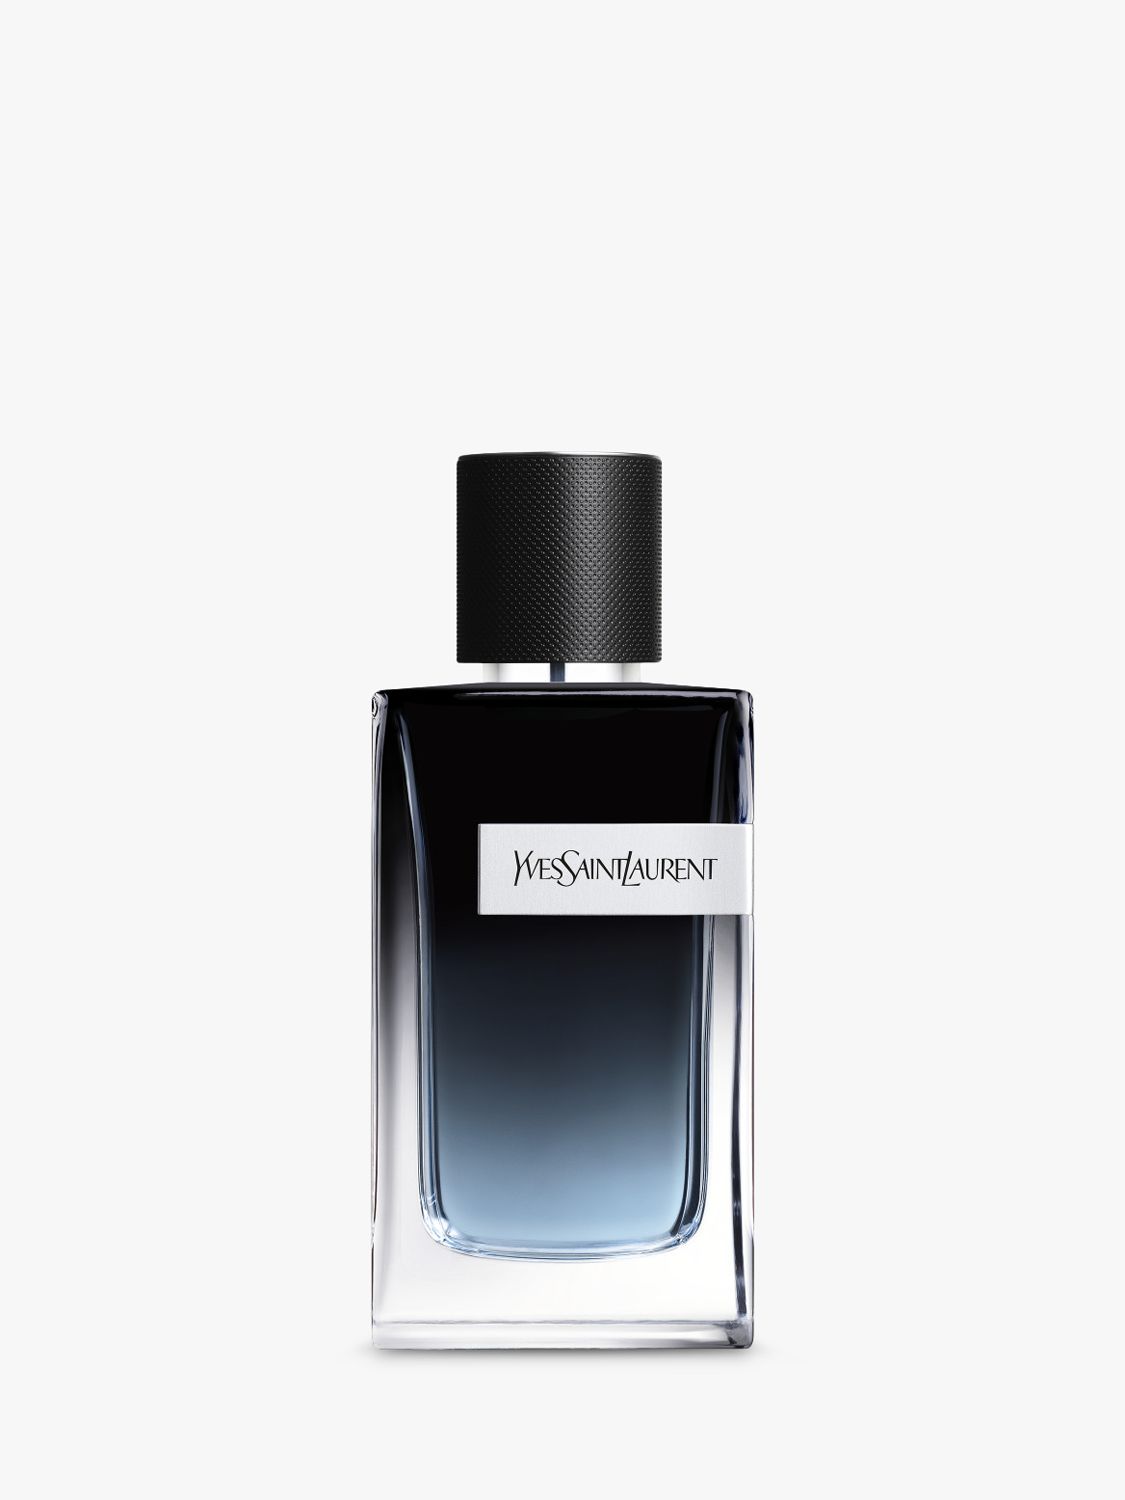 Yves Saint Laurent Y Eau de Parfum, £95